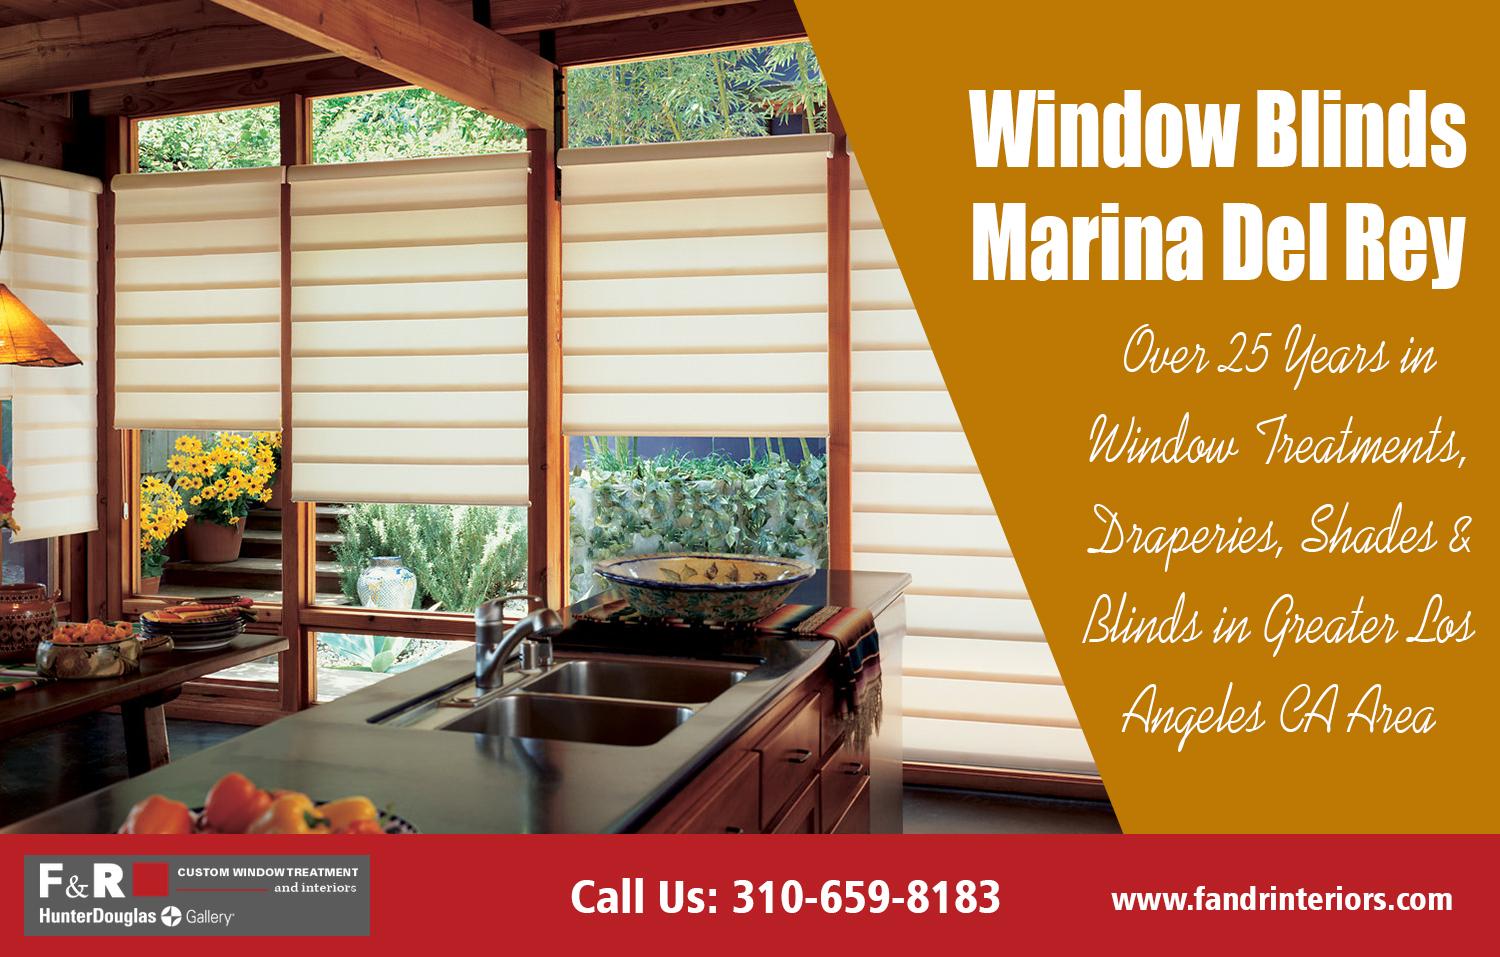 Window blinds Marina Del Rey| http://fandrinteriors.com/